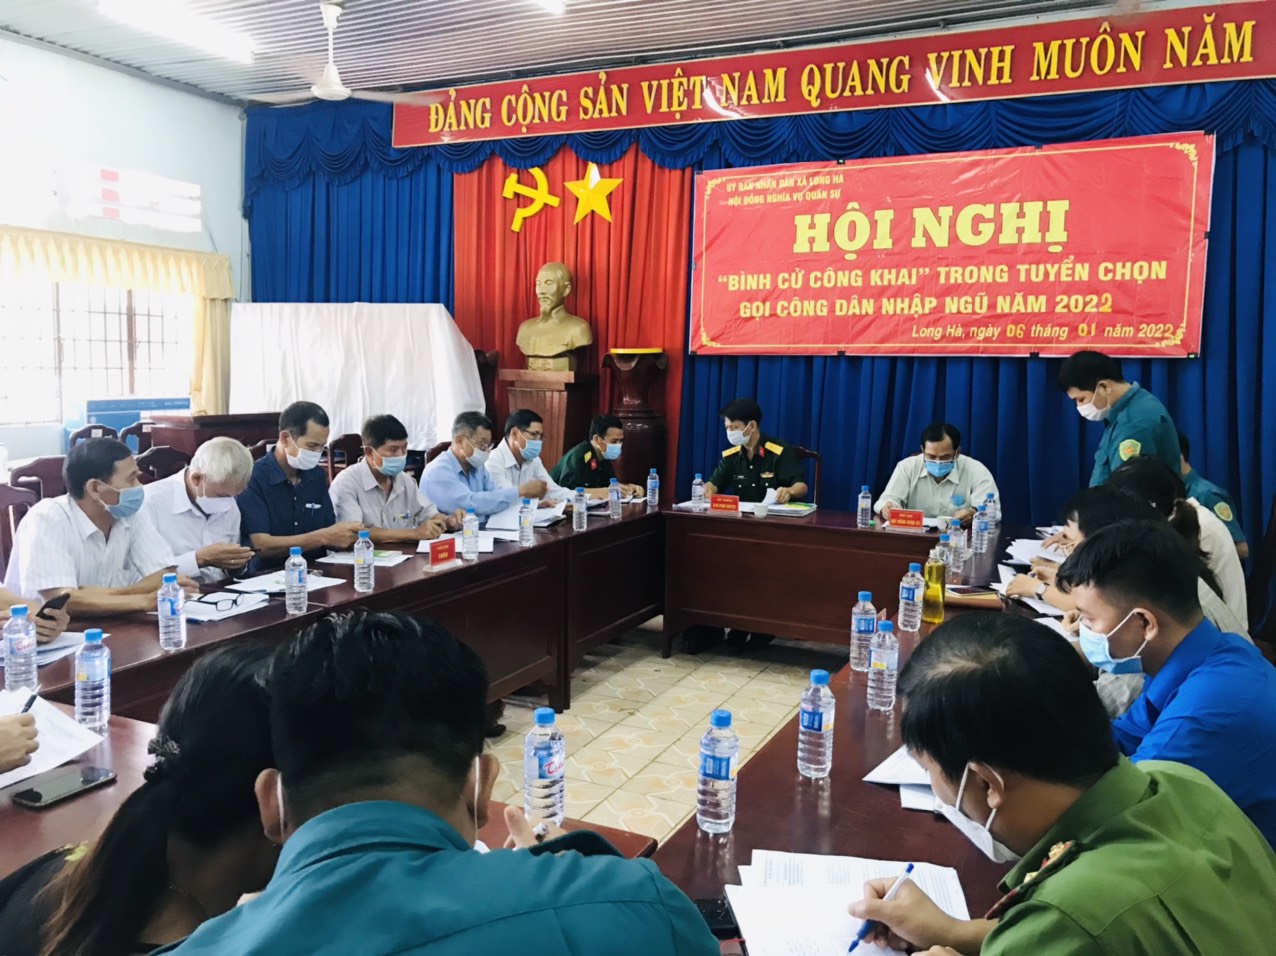 Long Hà tổ chức Hội nghị “Bình cử, công khai” trong tuyển chọn, gọi công dân nhập ngũ năm 2022